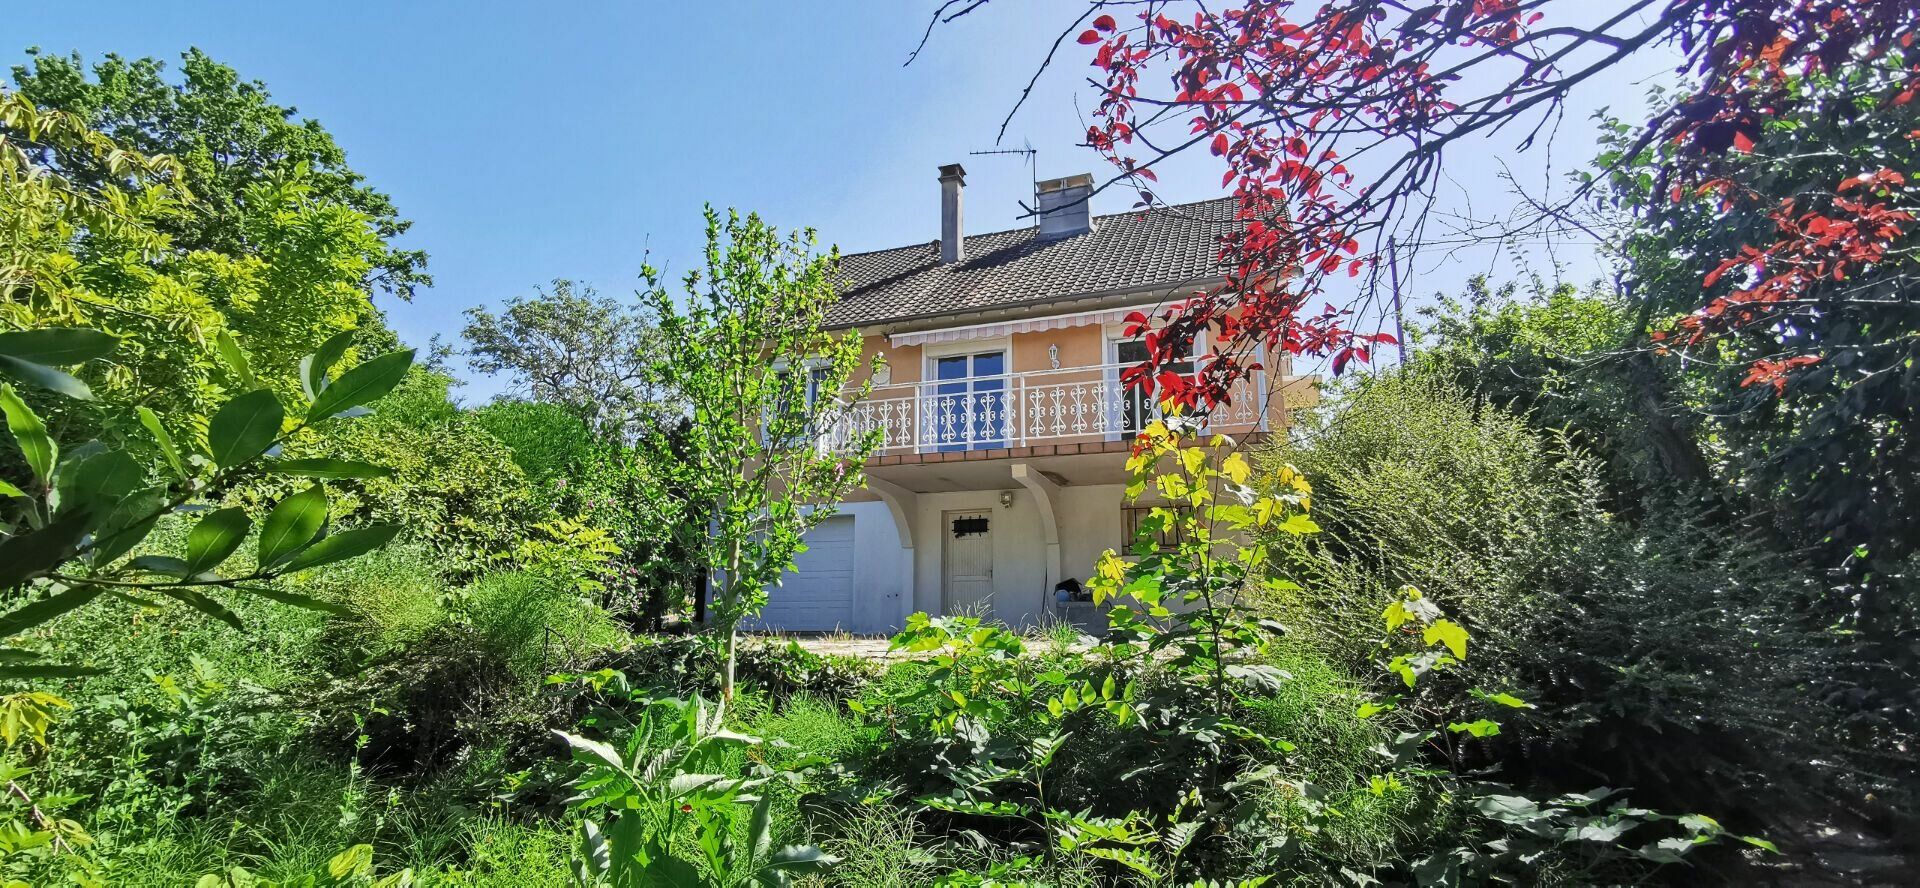 Maison à vendre 4 76m2 à Boussy-Saint-Antoine vignette-1